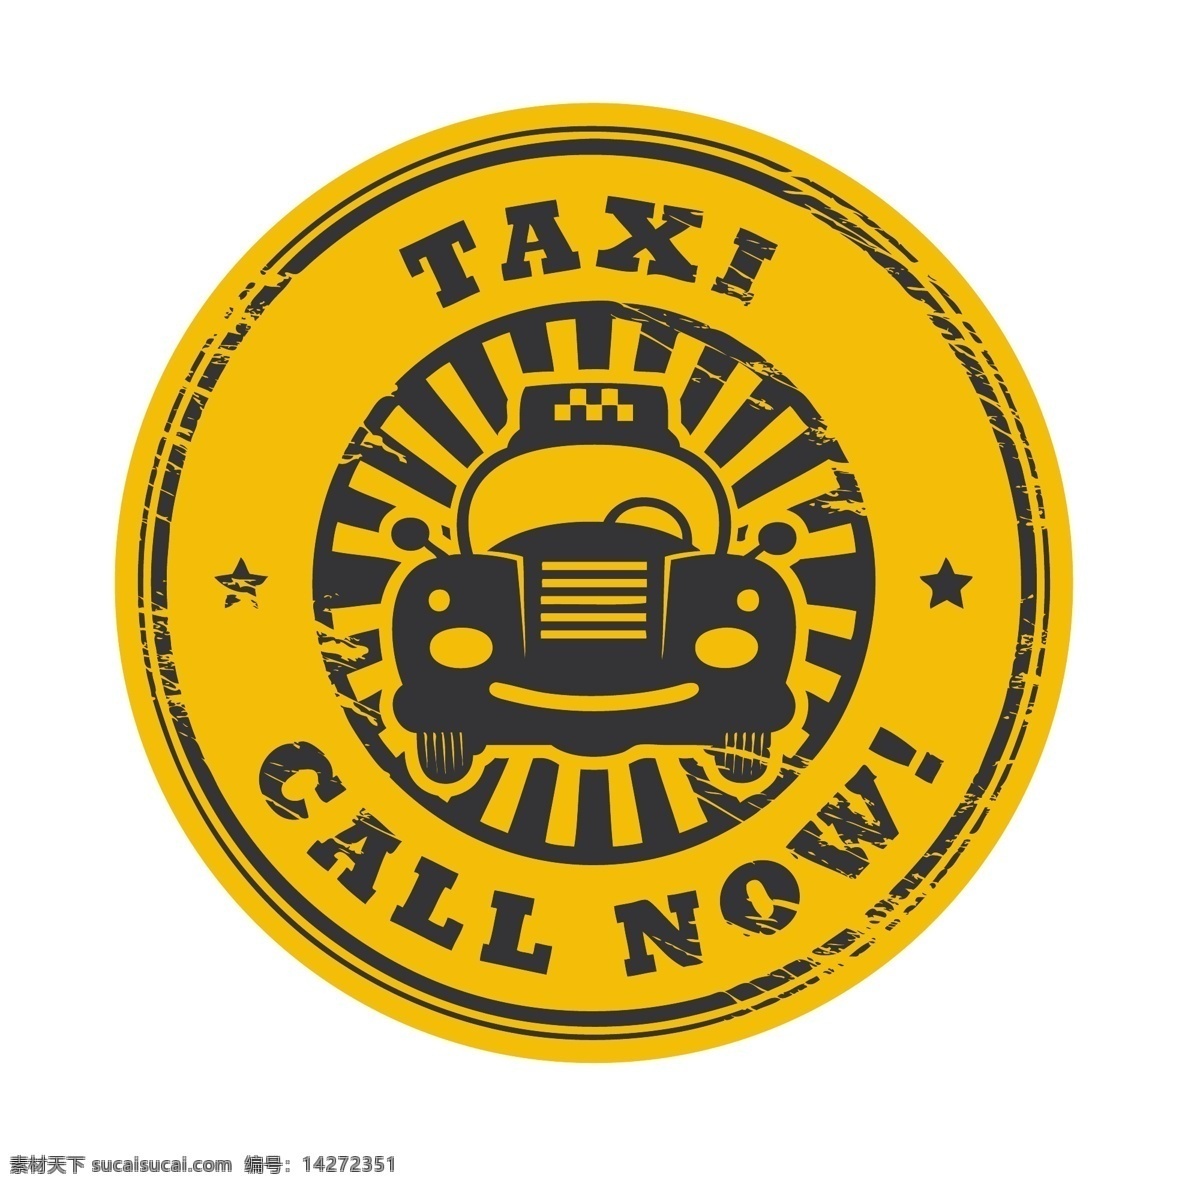 标识标志图标 出租车 路标 图标 小图标 英国 圆形 英式 矢量 模板下载 英式出租车 taxi psd源文件